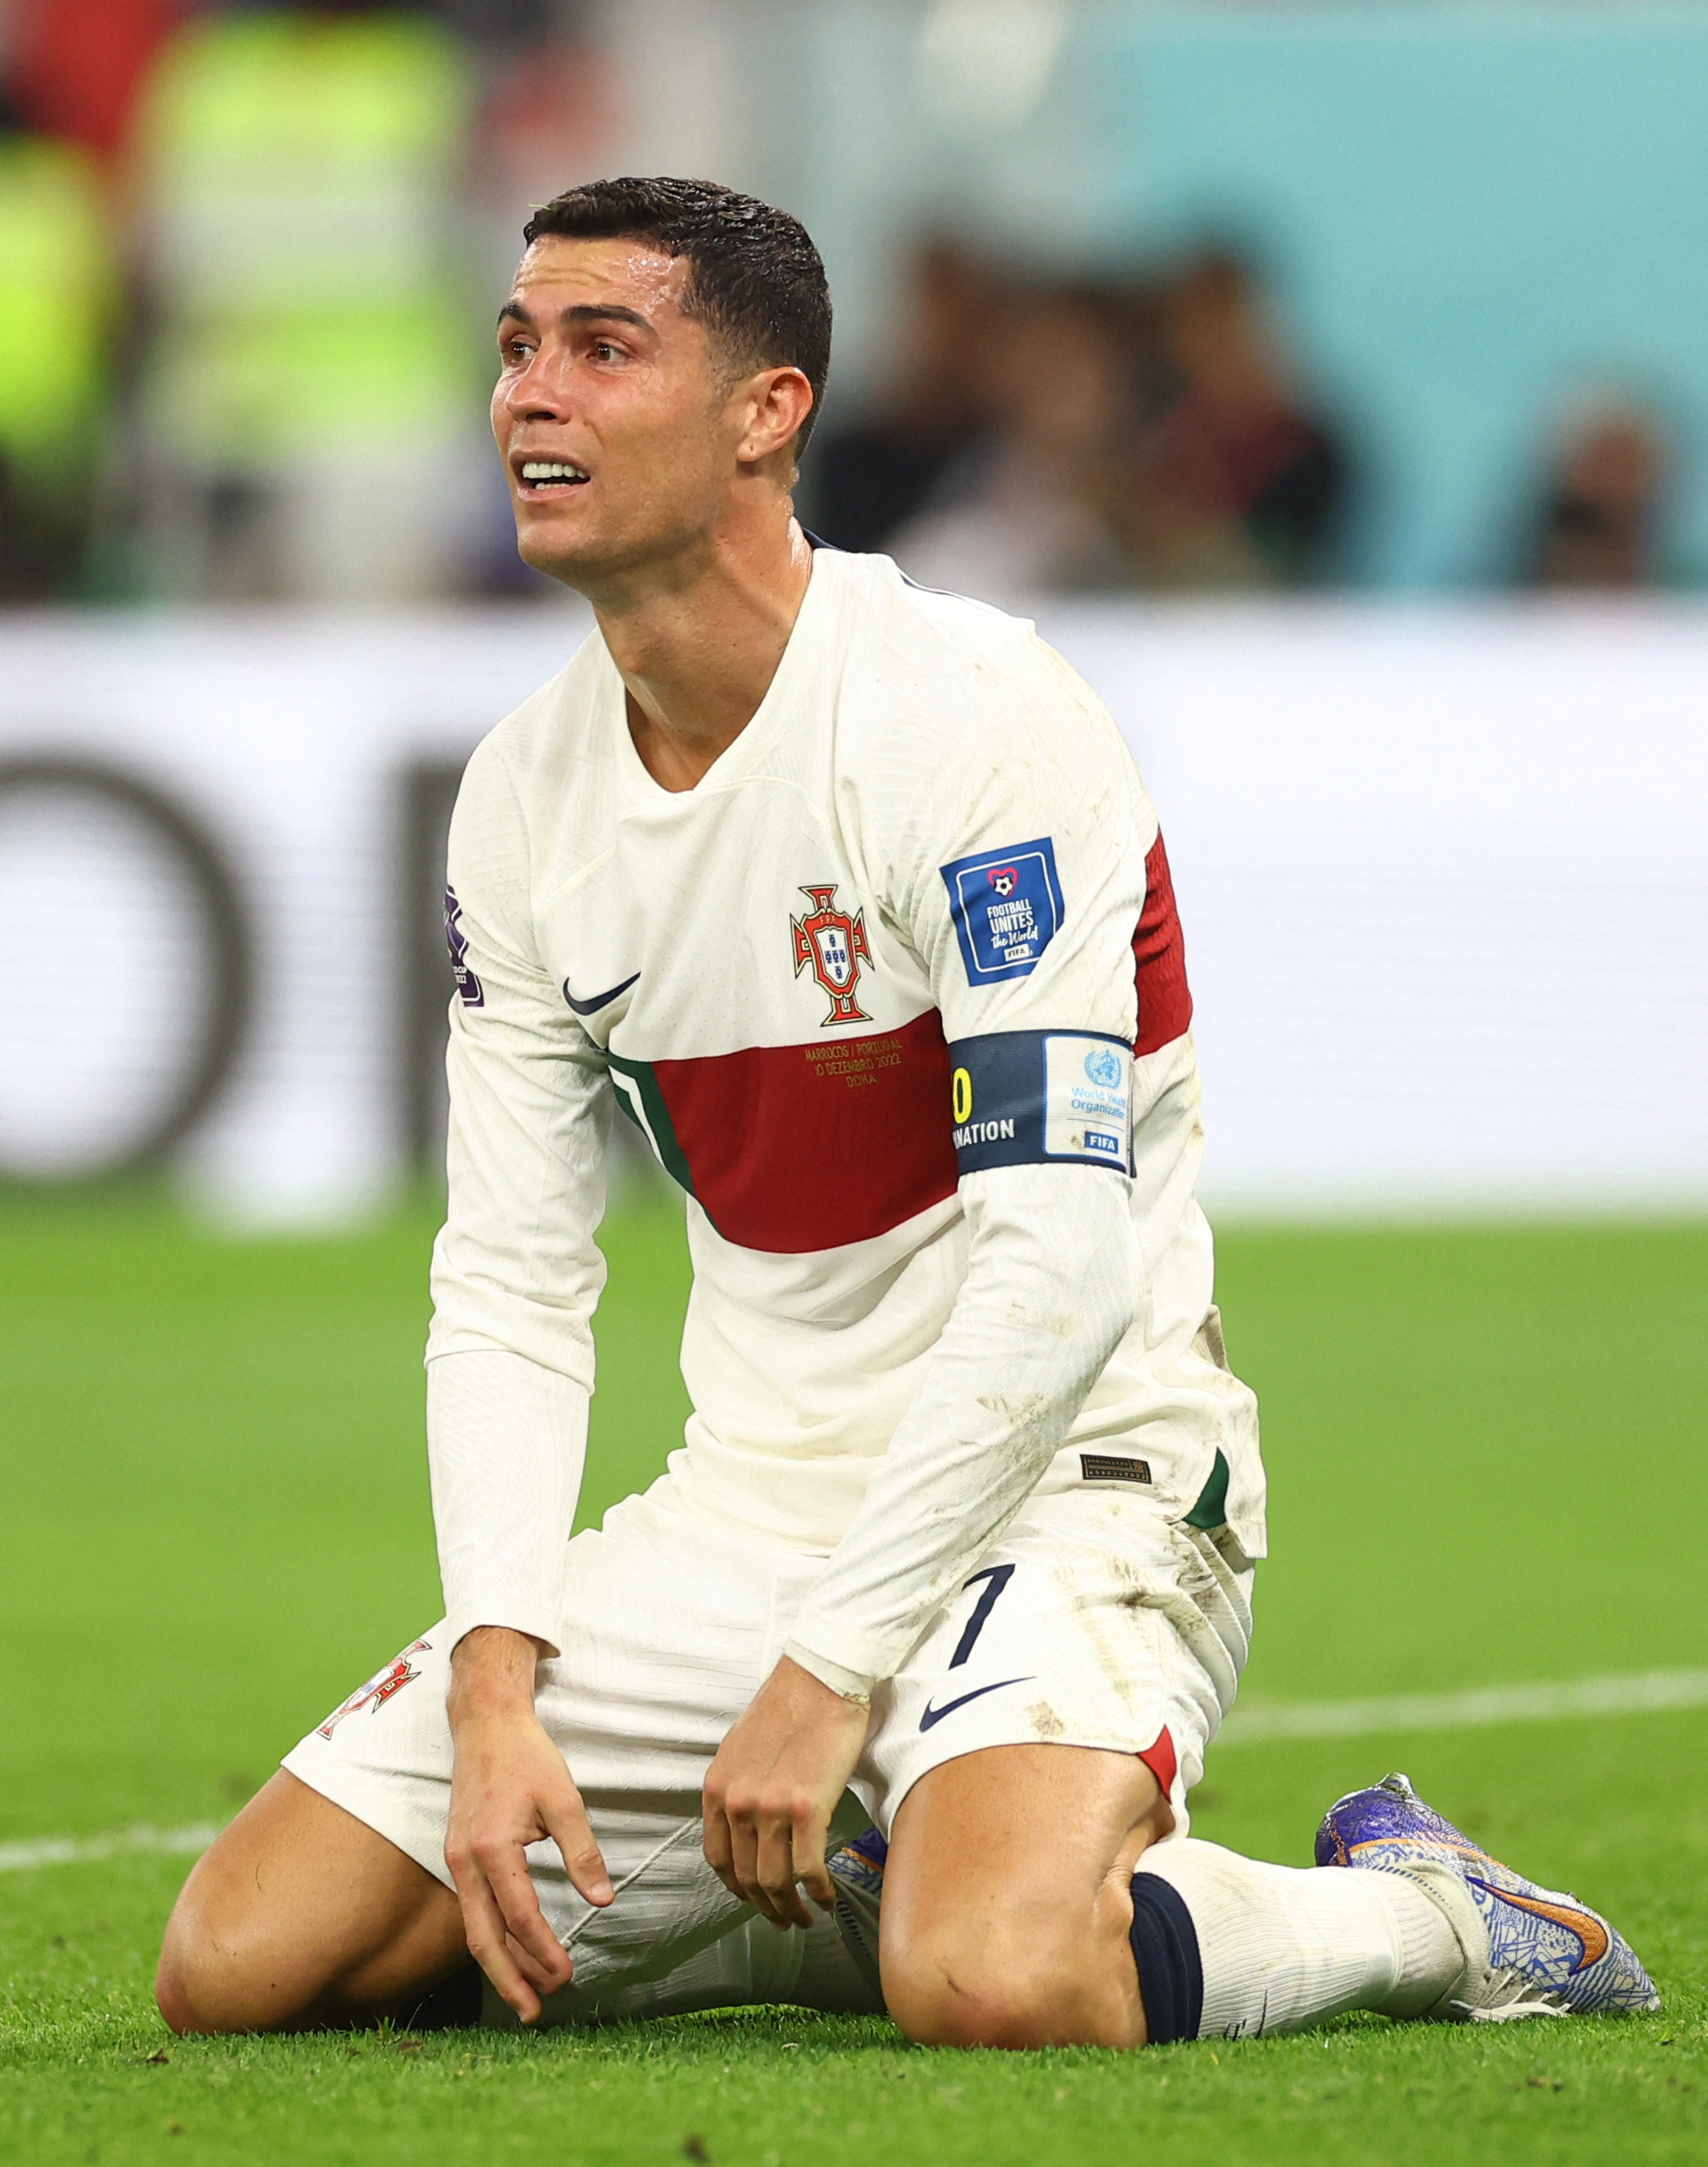 Xem hình ảnh liên quan đến Ronaldo, World Cup 2022 và Bồ Đào Nha để tận hưởng sự phấn khích và cảm hứng cho trận đấu sắp tới! Ronaldo là một trong những cầu thủ xuất sắc nhất thế giới và đội tuyển Bồ Đào Nha của anh ta đang là một đối thủ đáng gờm tại World Cup.